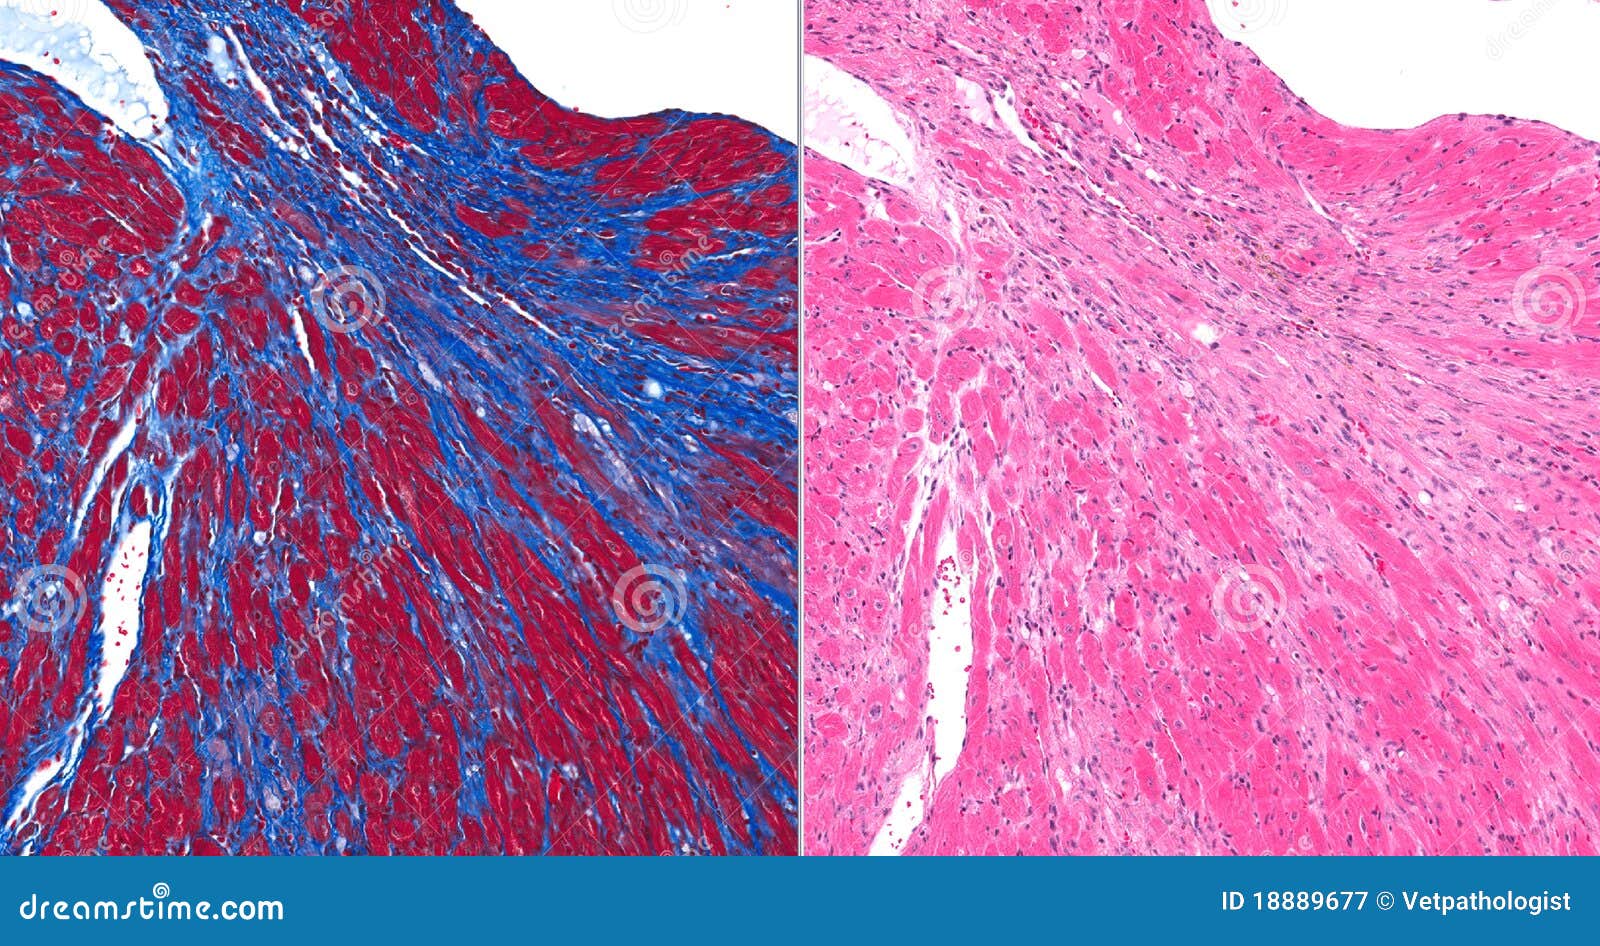 fibrosis (scar) in heart